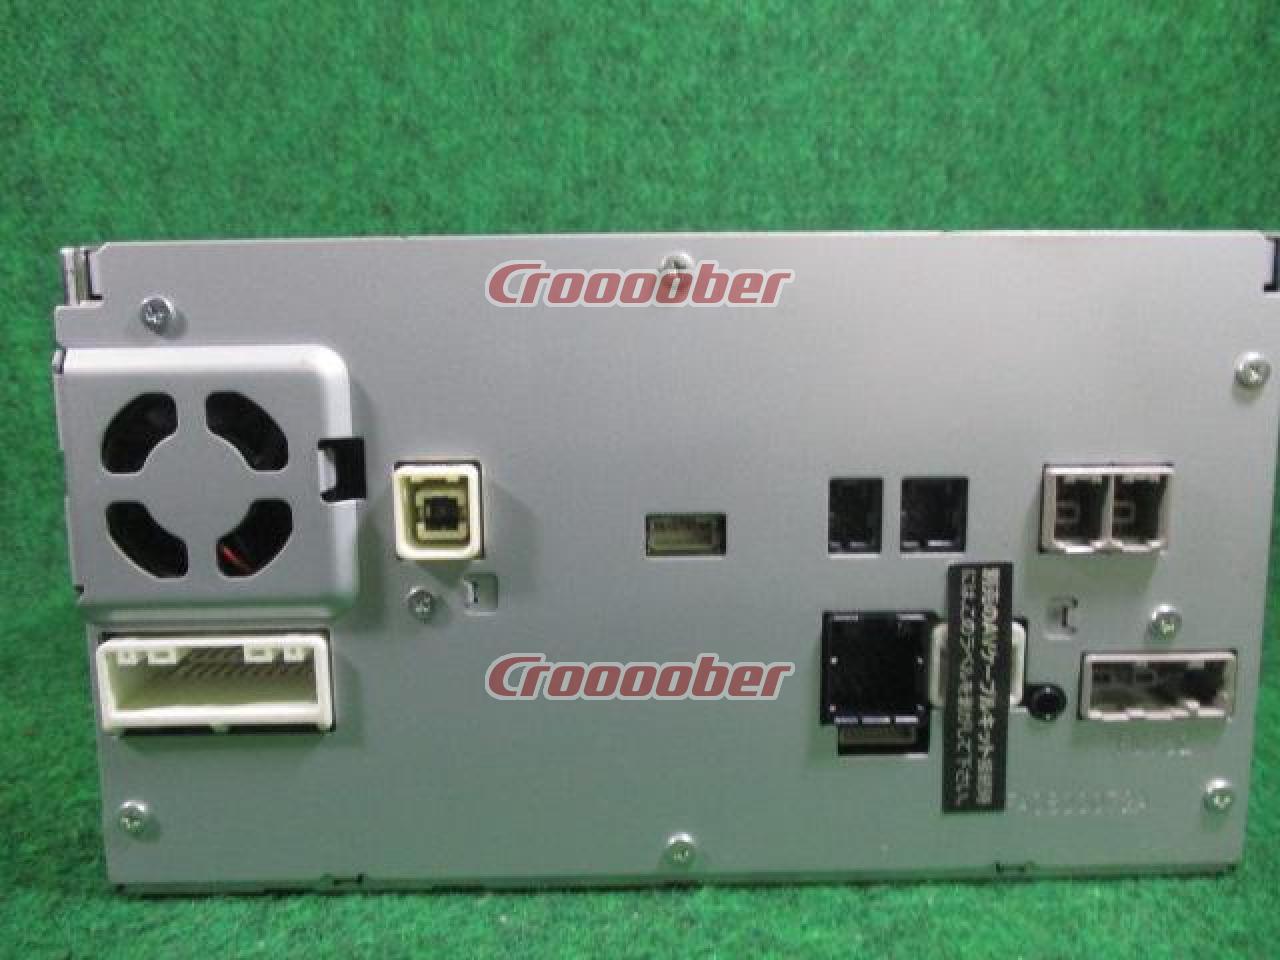 日産純正 MM312D-W 7V型200㎜ワイド/2X2フルセグ・Bluetooth(ハンズフリーのみ)内蔵/CD/AUX/SD/8GBメモリーナビ   カーナビ(地デジ） AV一体メモリーナビ（地デジ）パーツの通販なら  Croooober(クルーバー)